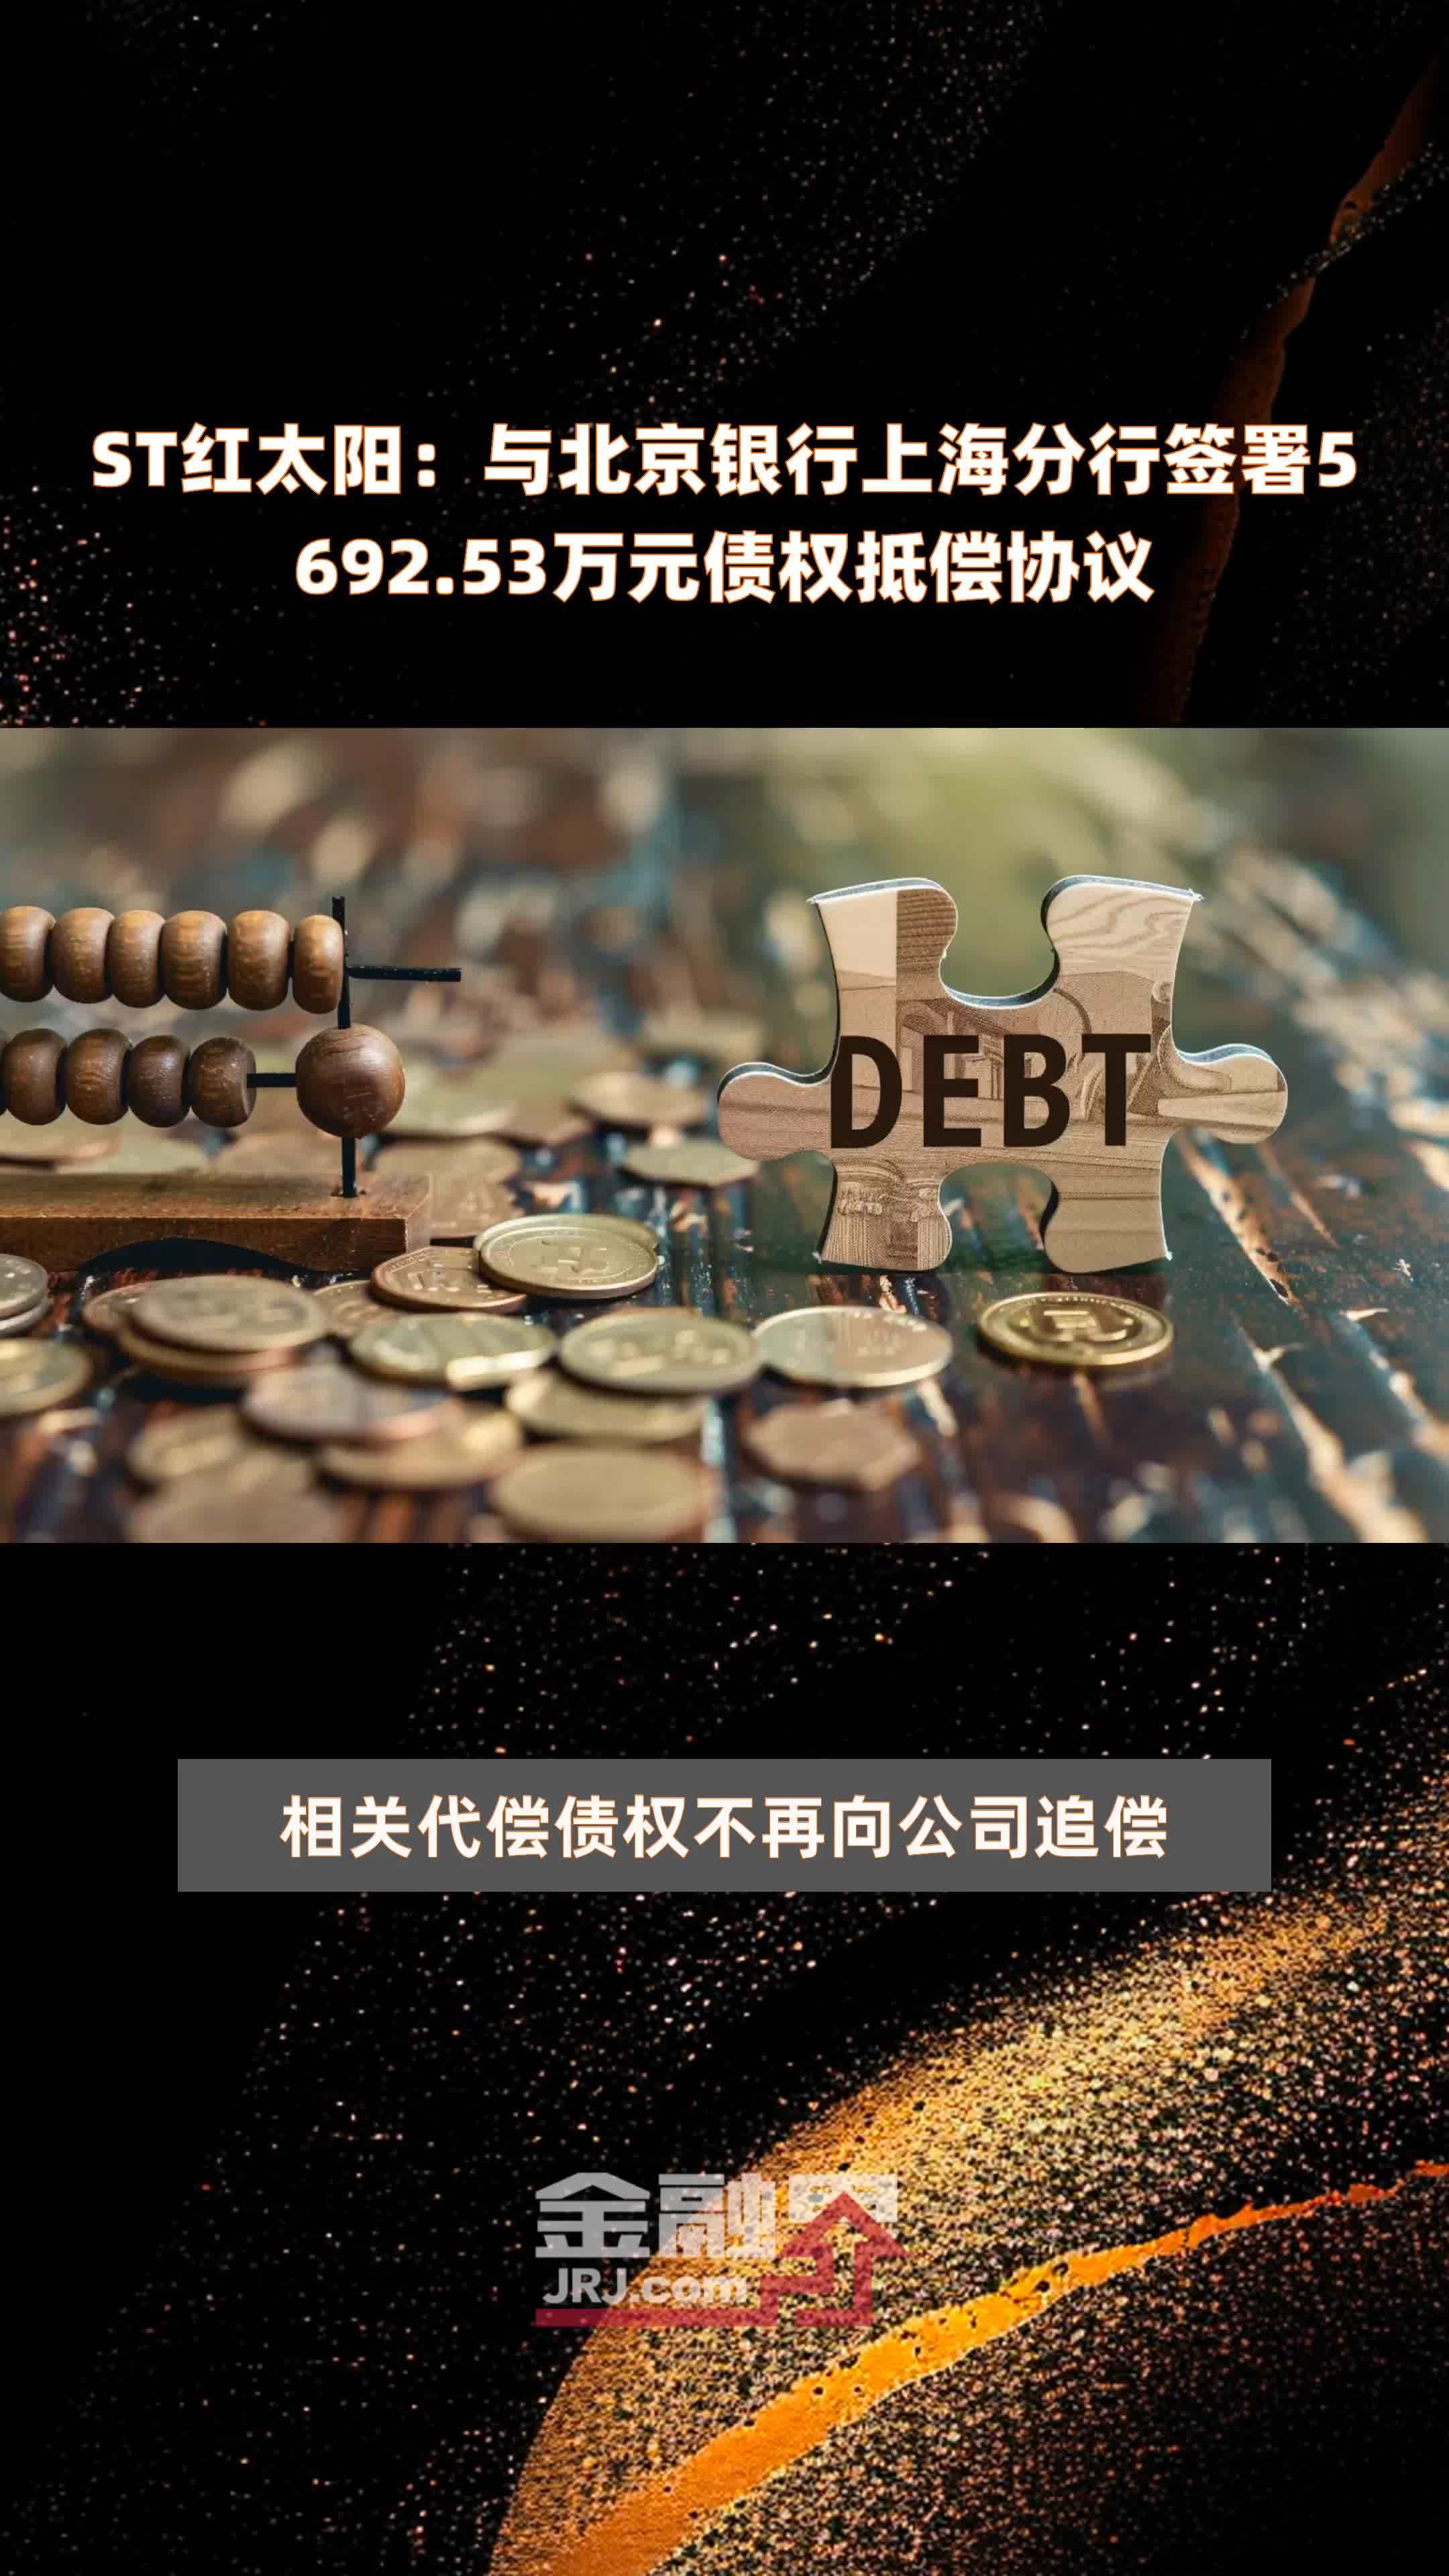 ST红太阳：与北京银行上海分行签署5692.53万元债权抵偿协议 |快报